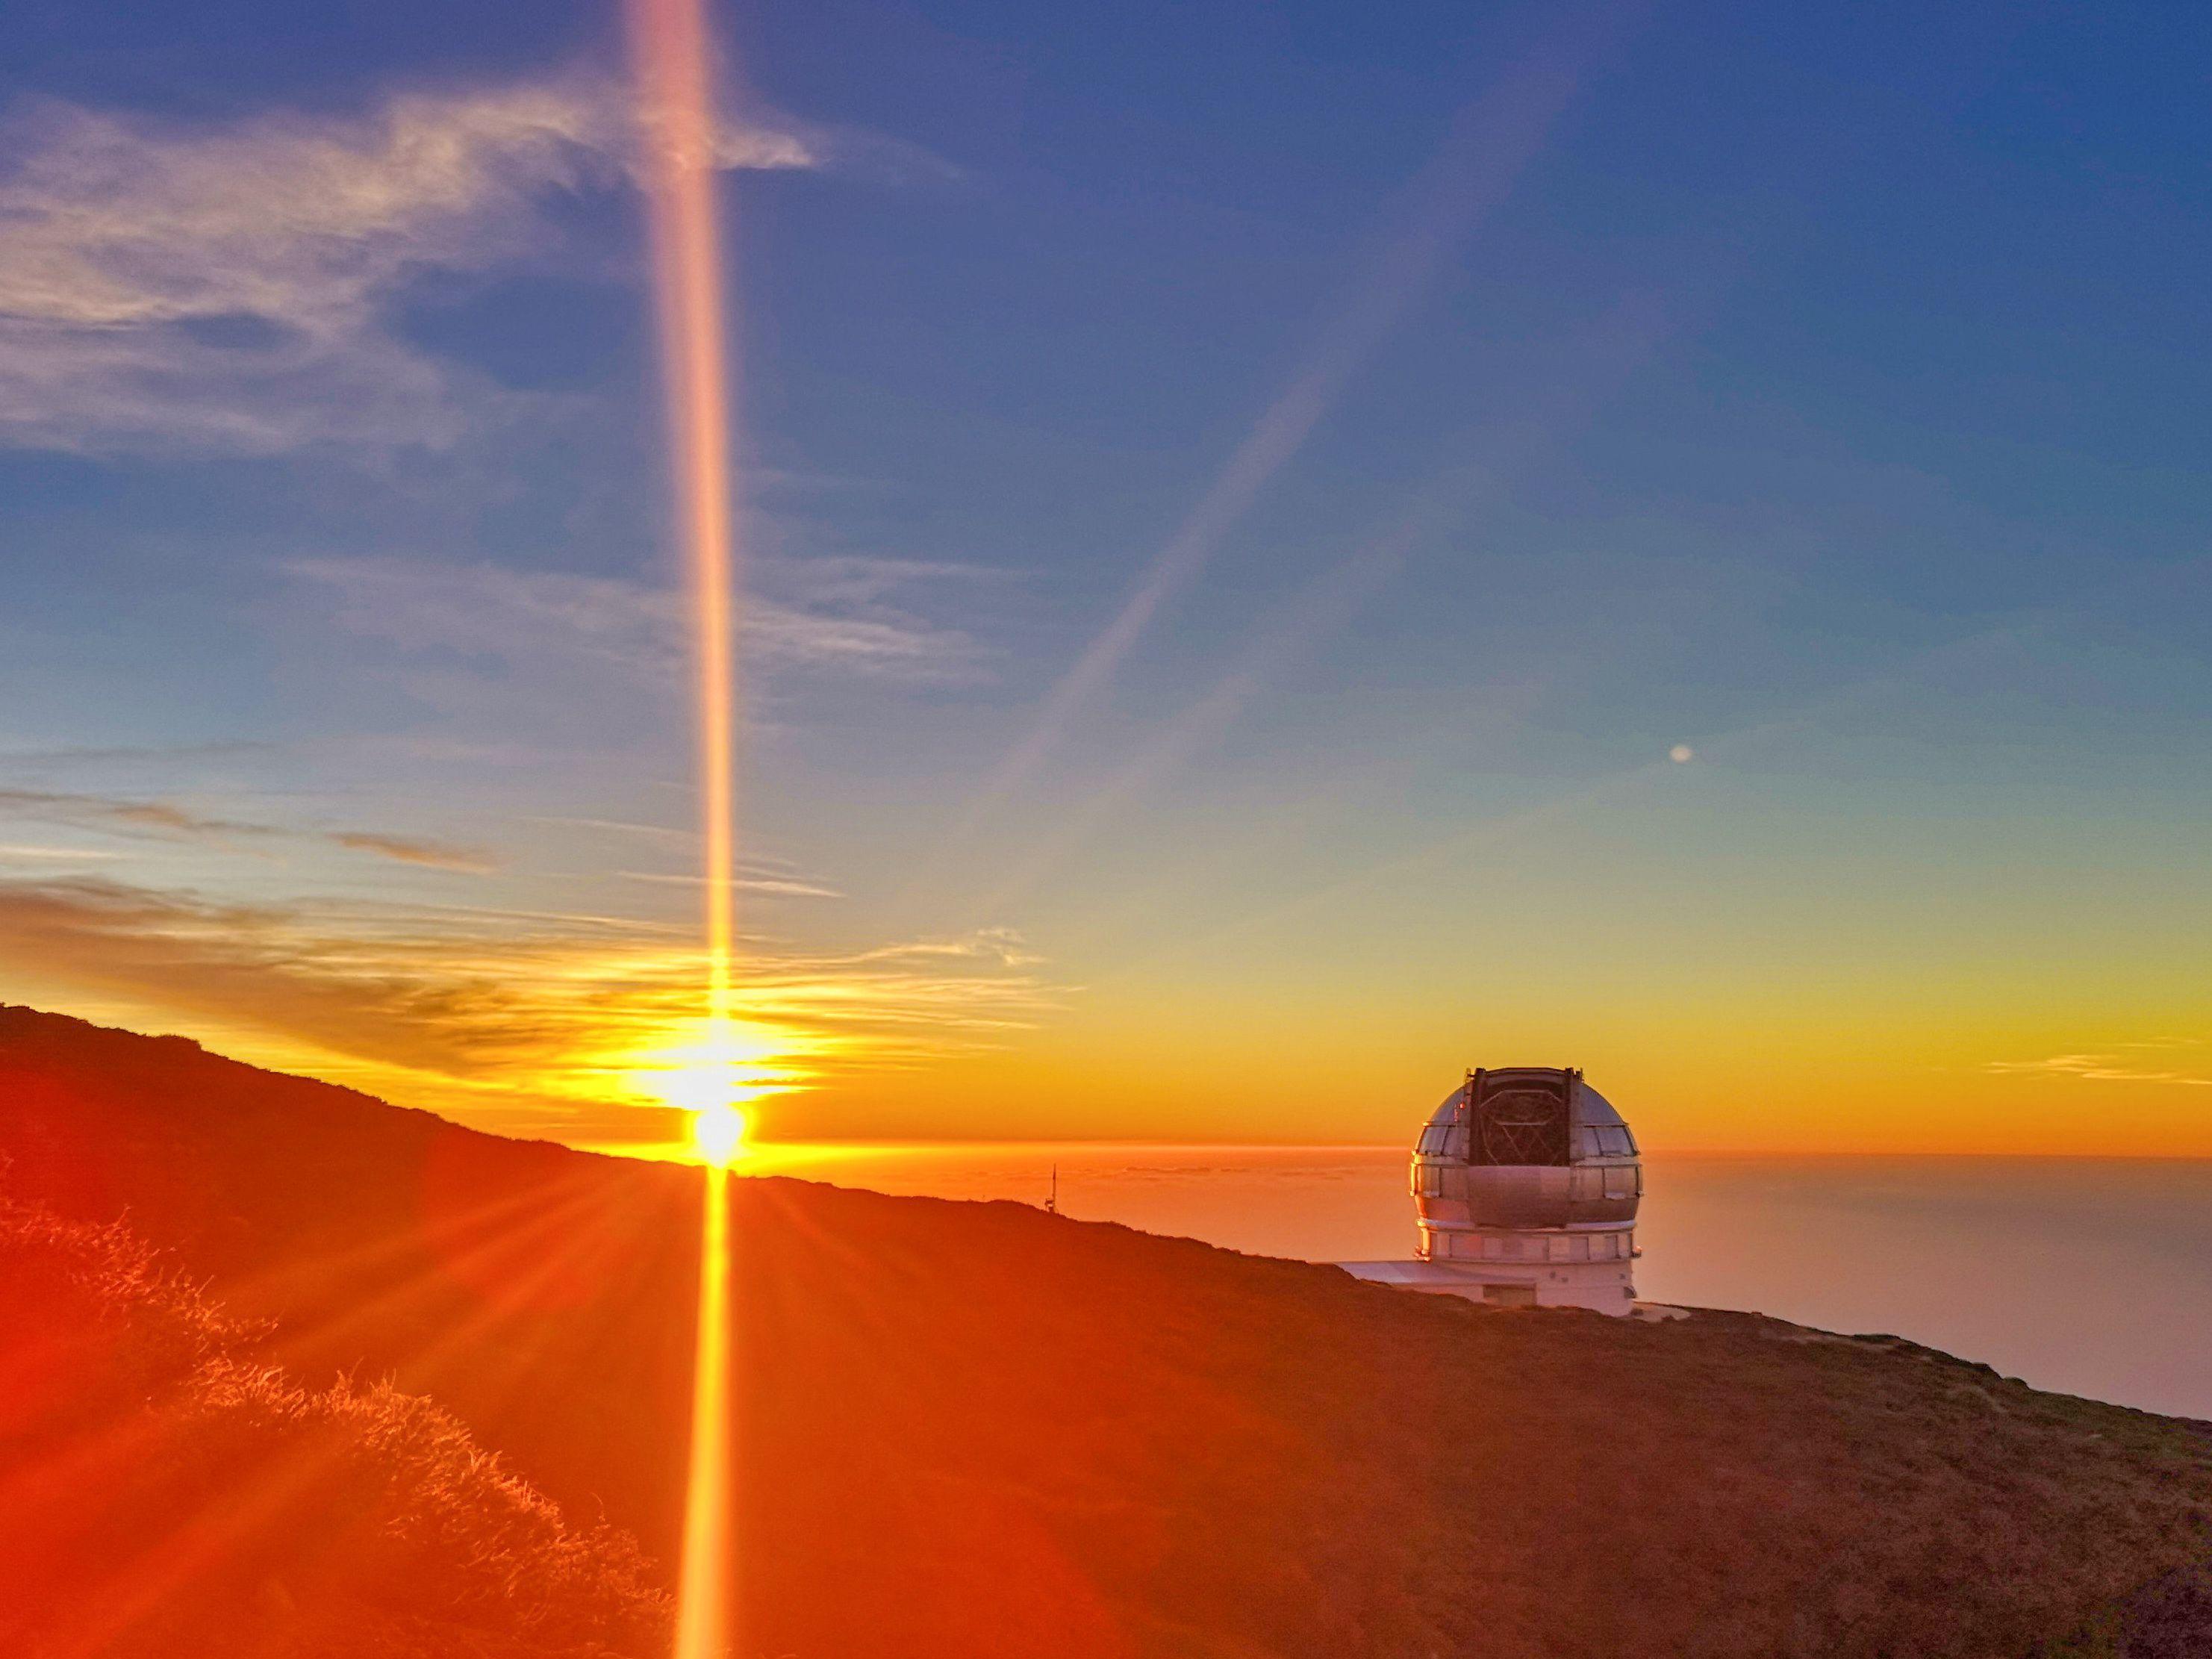 El Gran Telescopio de Canarias